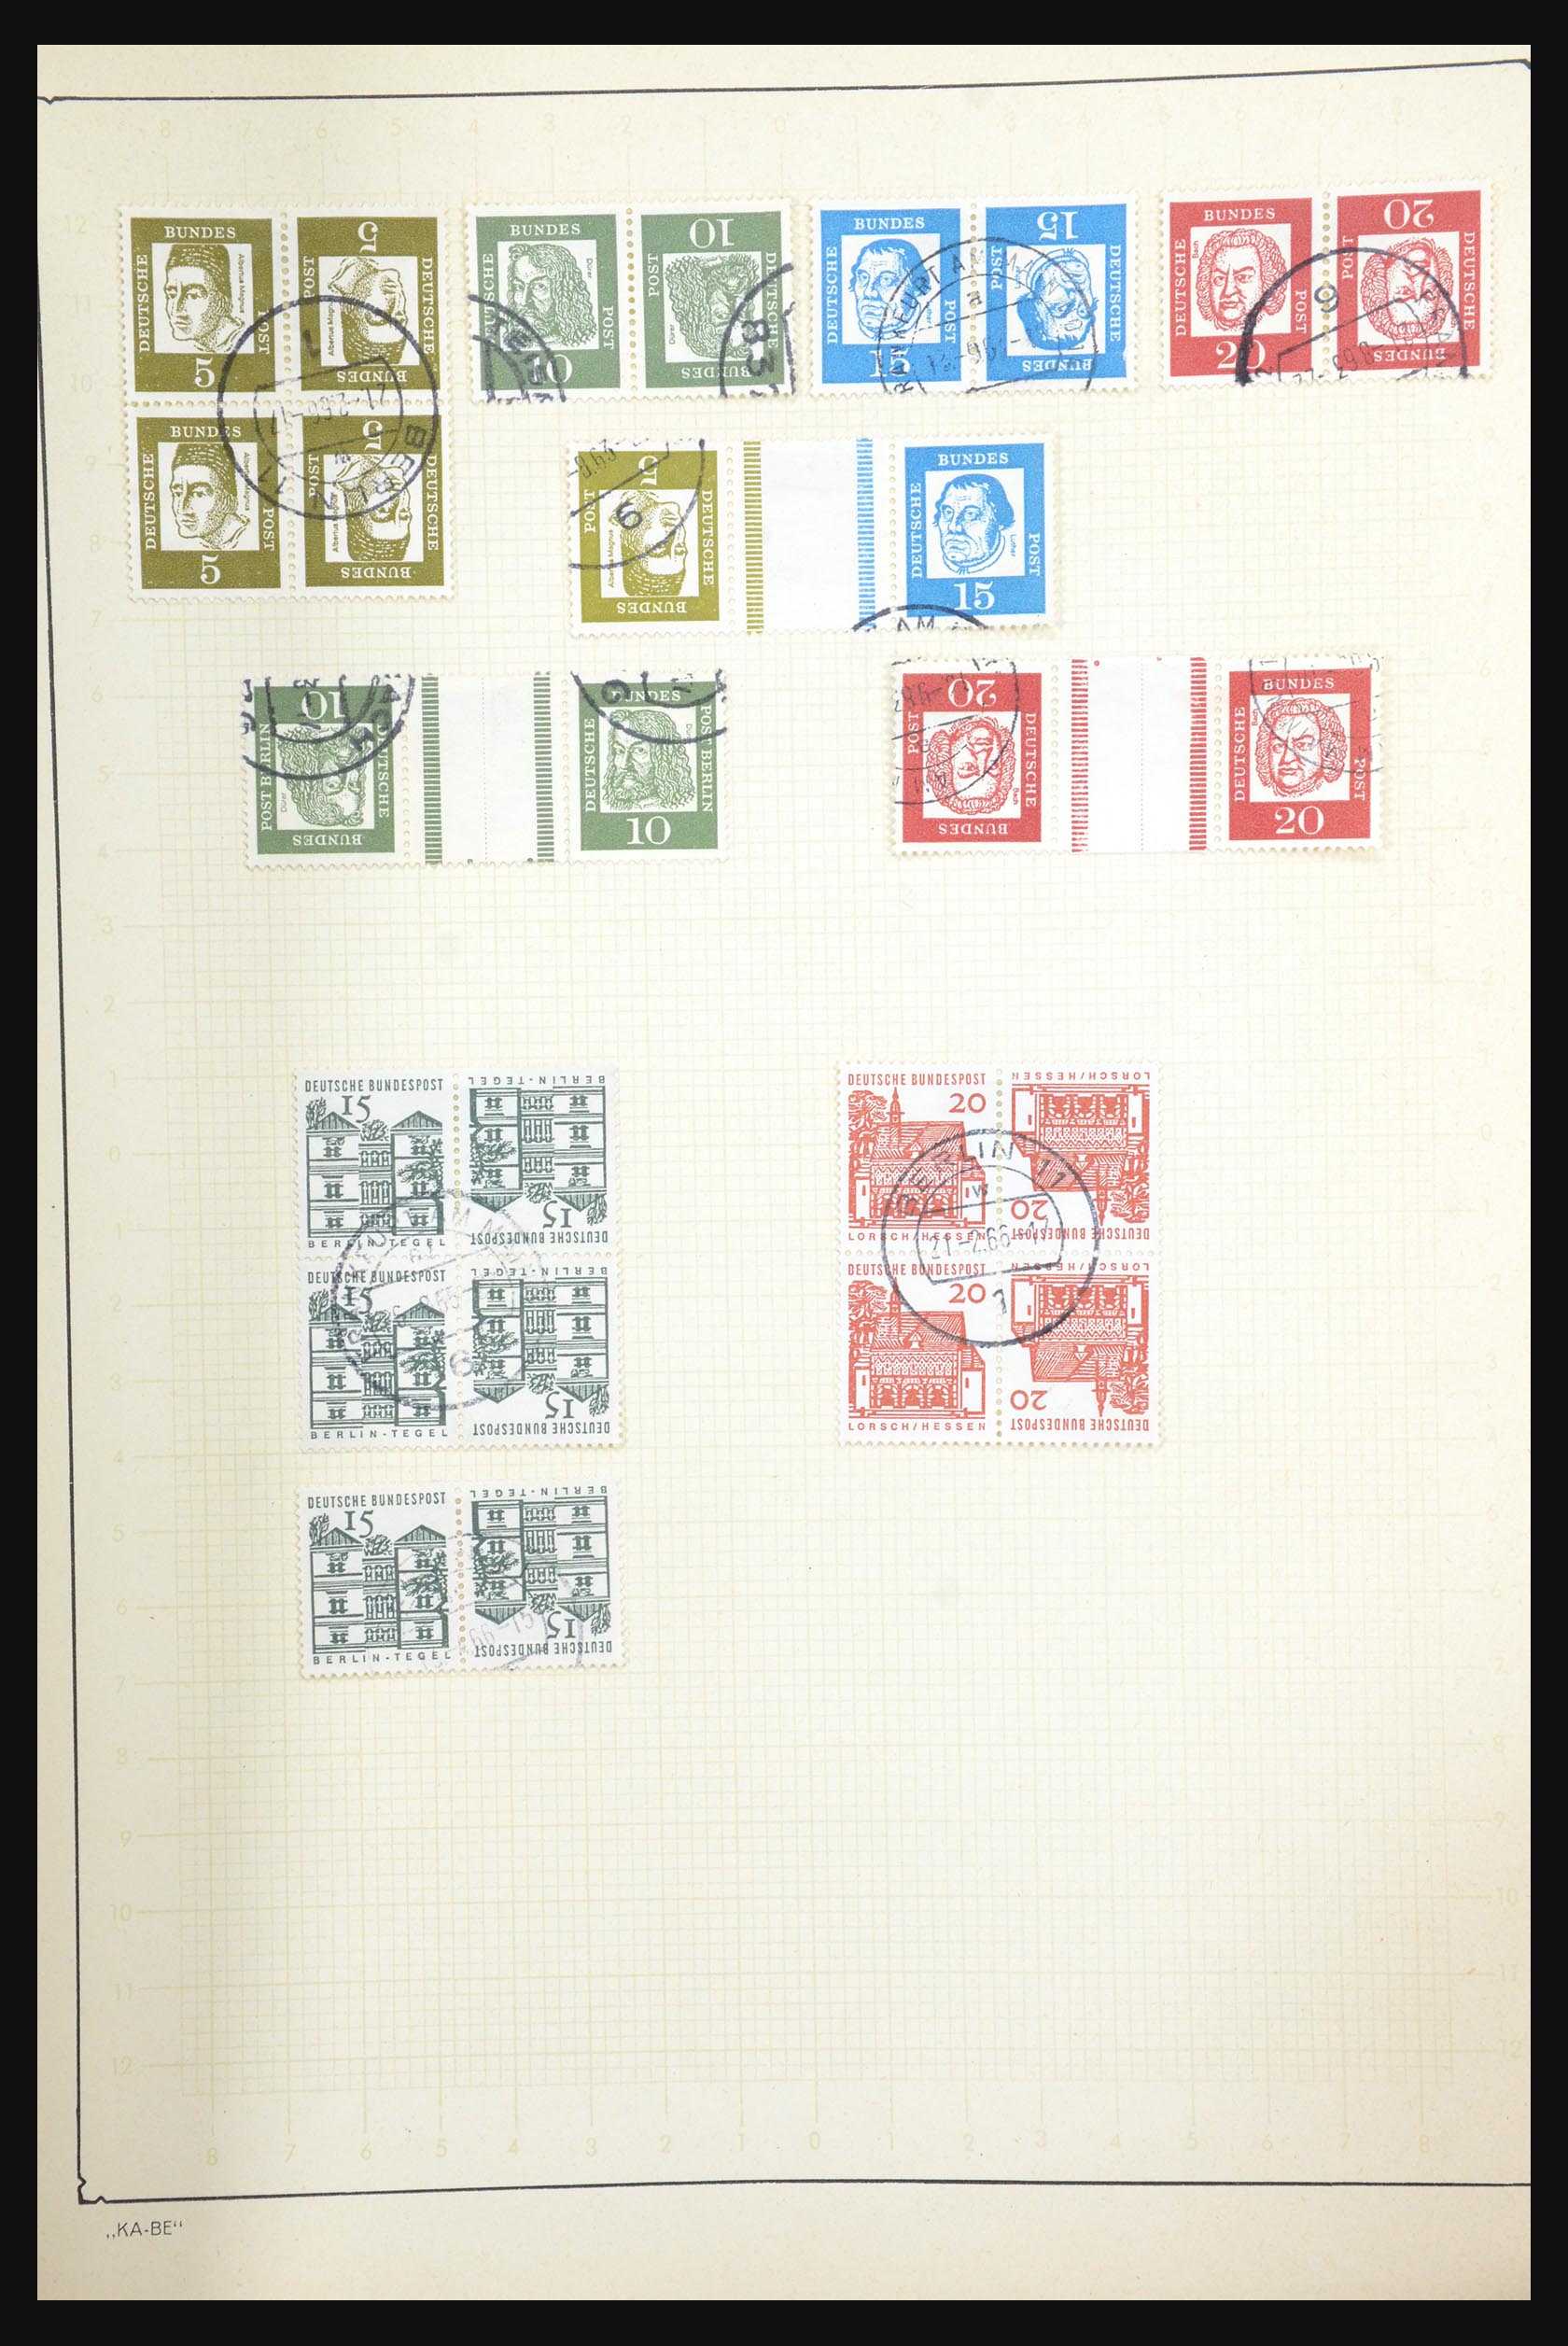 31566 074 - 31566 Duitsland combinaties 1909-1960.